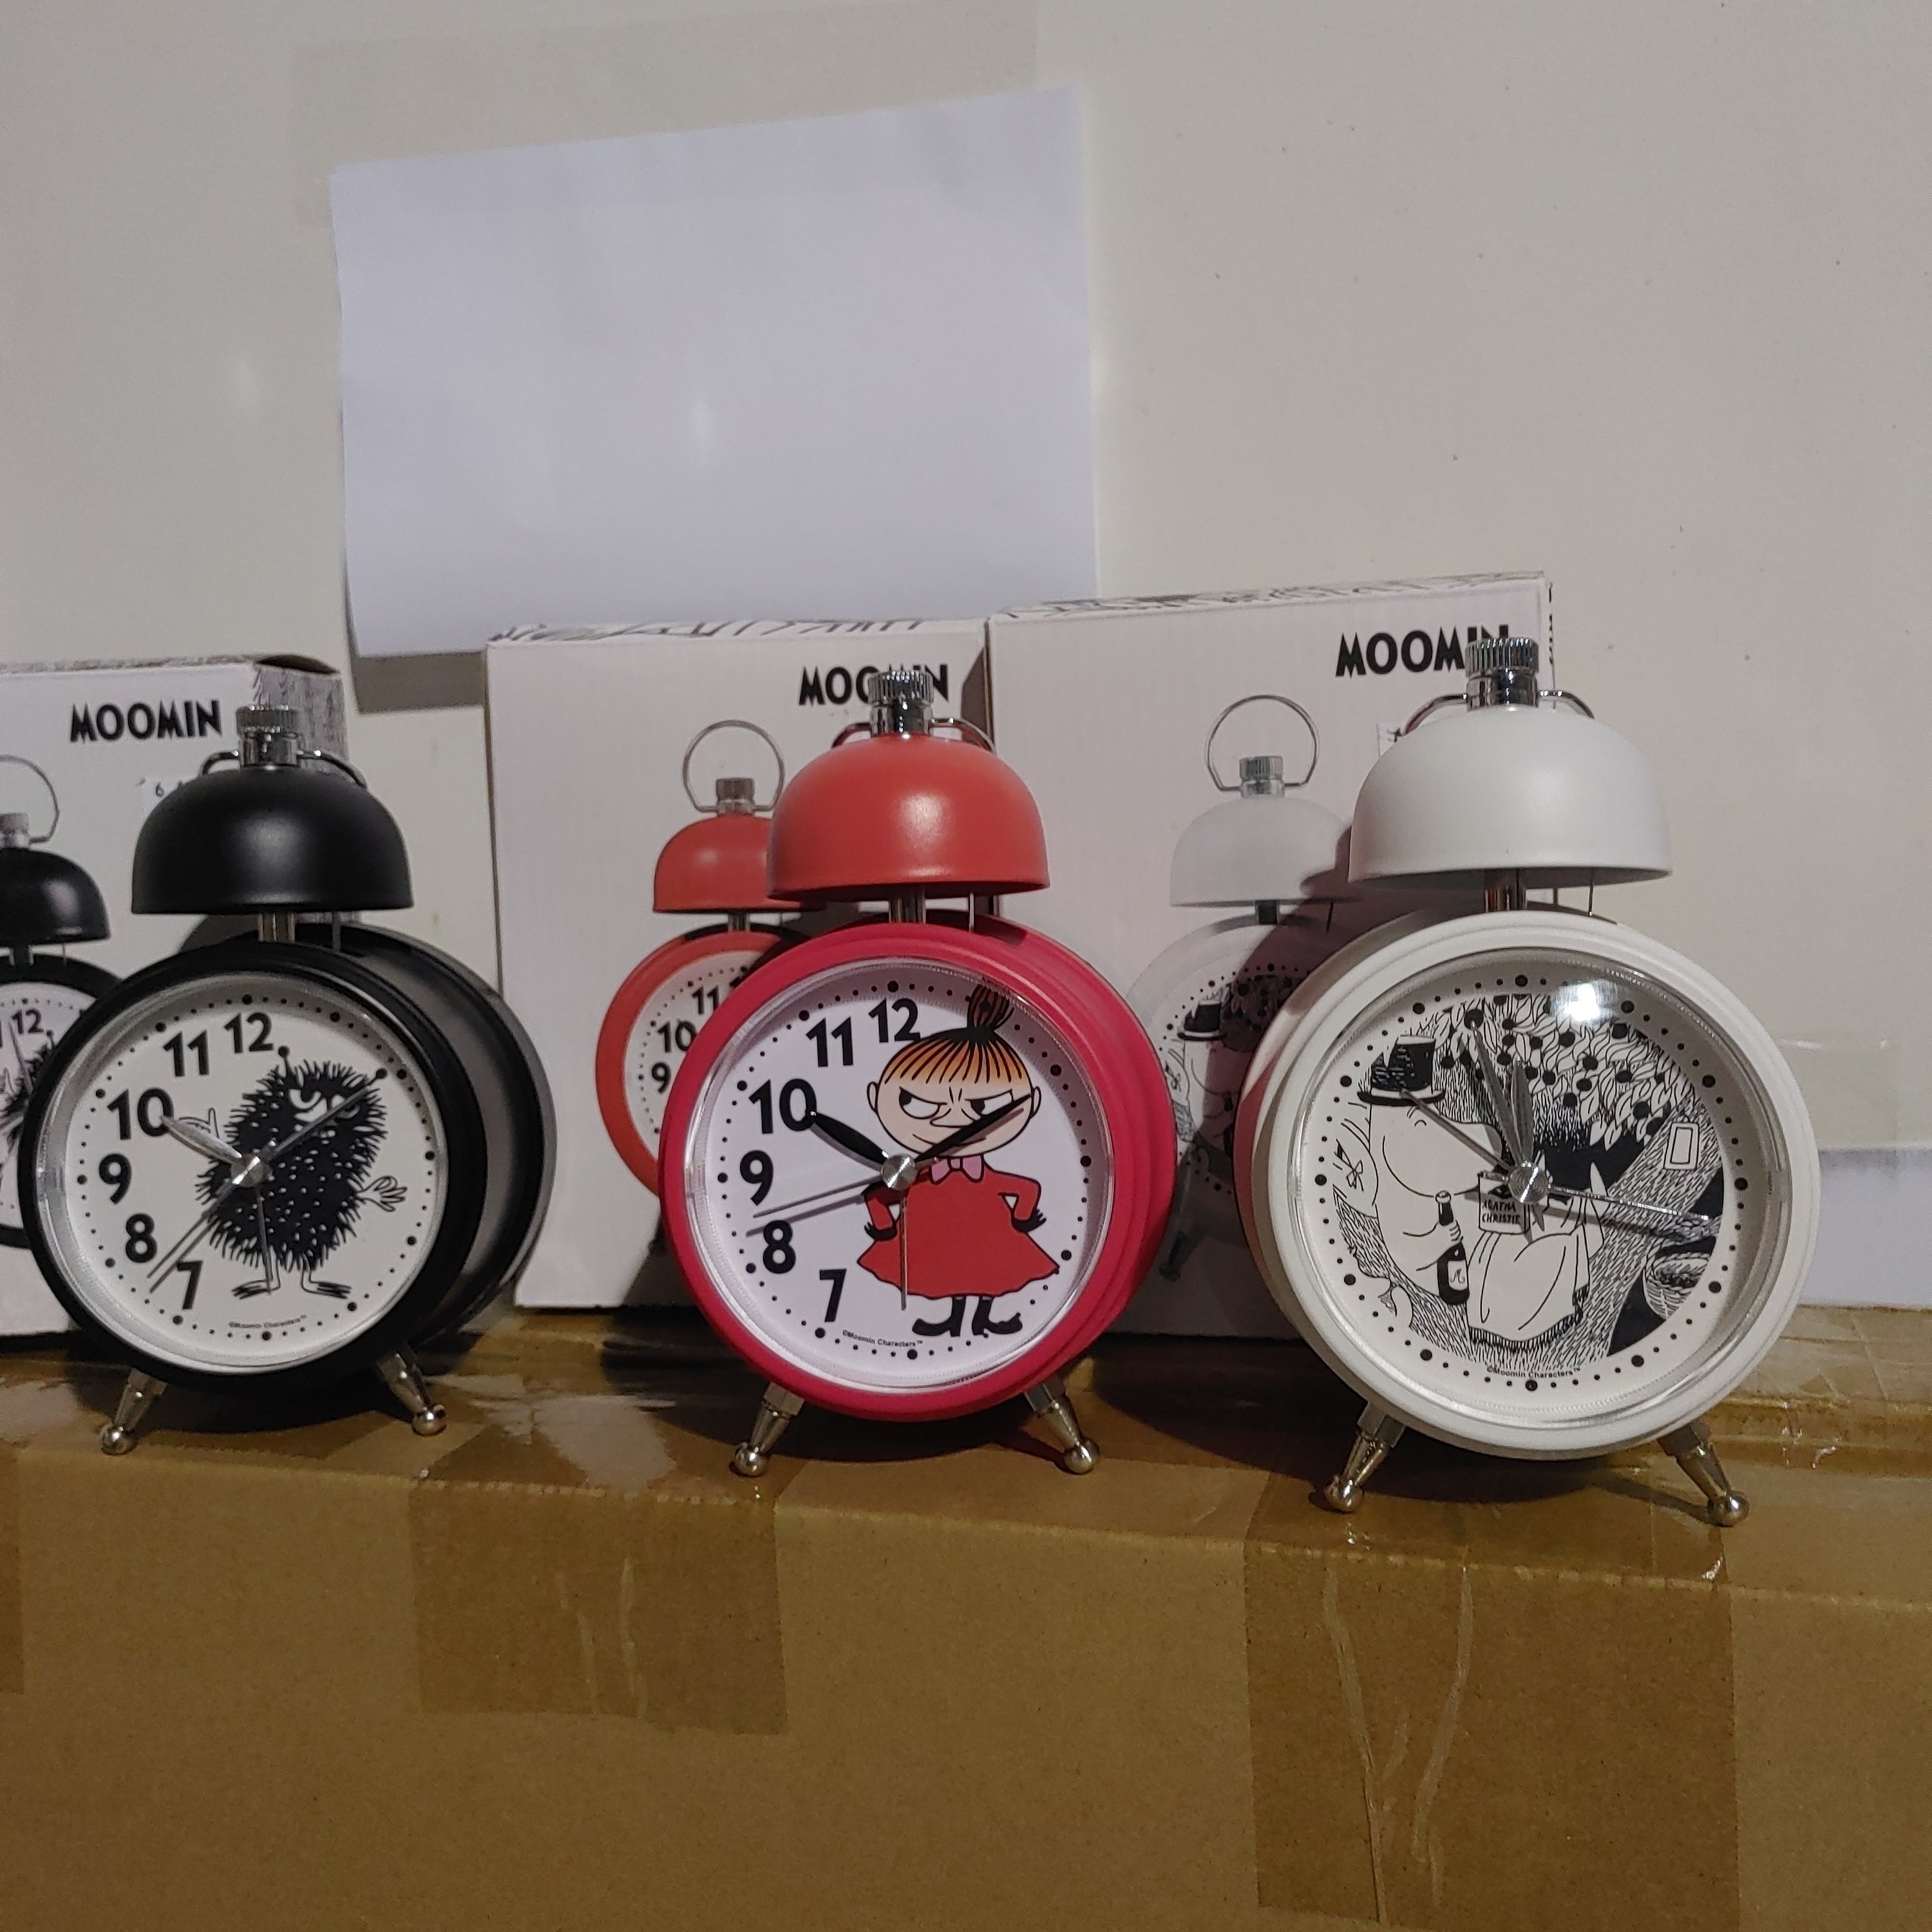 Moomin alarm clock by Saurum Papamoomin